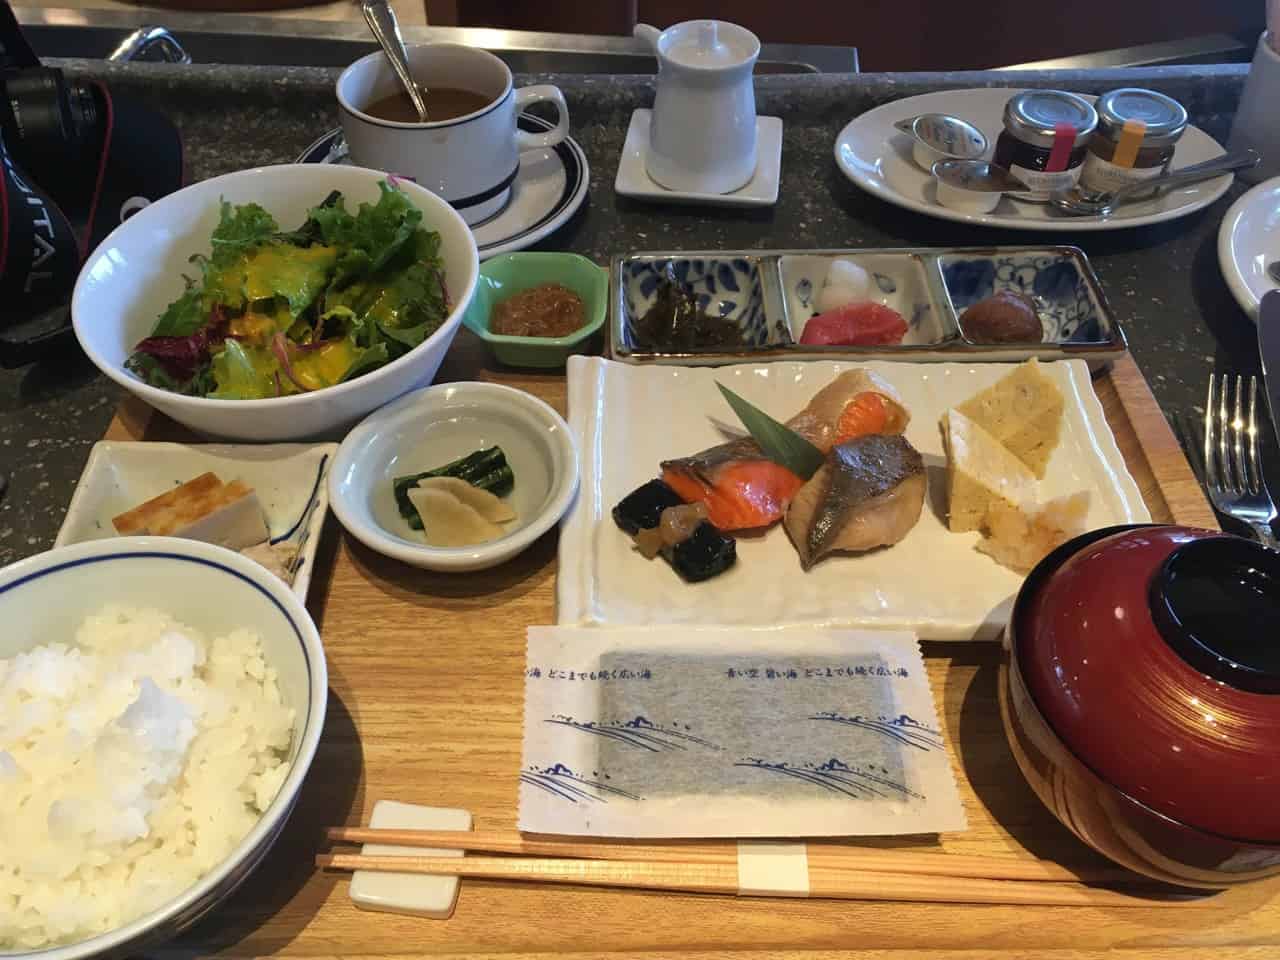 Japanese food at Karuizawa Grill